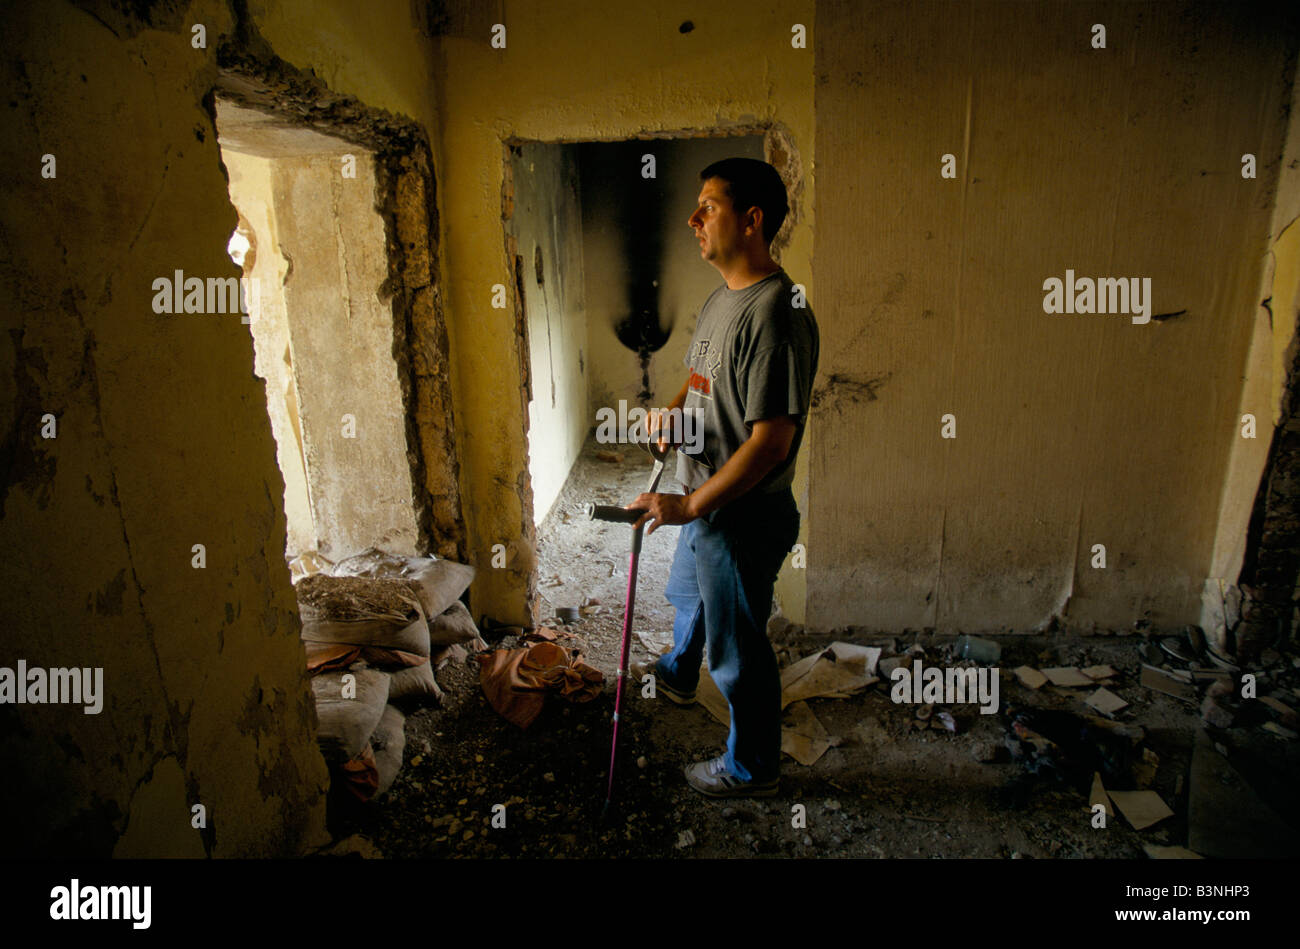 Mostar, juin 1996', alen kaytaz,ancien combattant et blessé 3 fois dans même jambe, se trouve dans les ruines d'un bâtiment, 1996 Banque D'Images